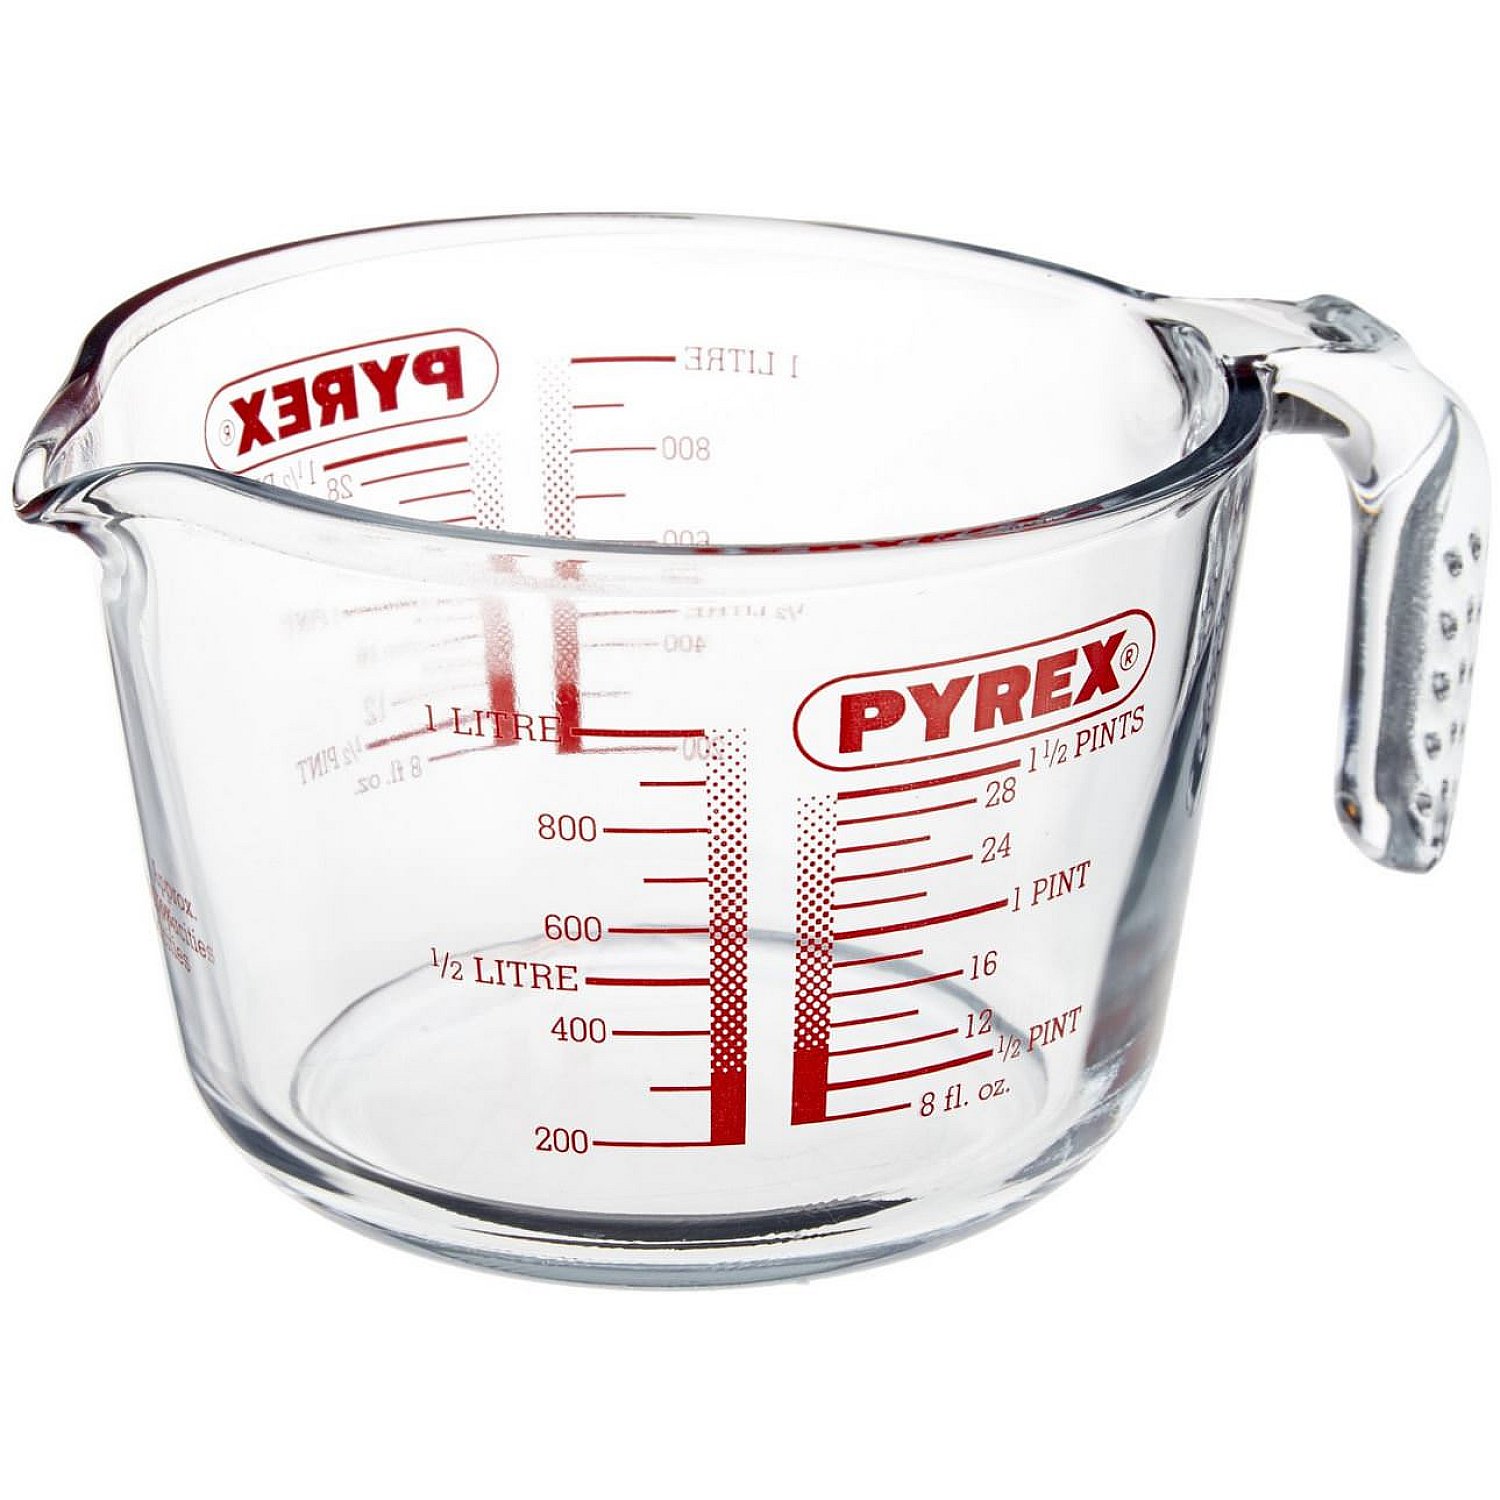 Pyrex Classic Messbecher 1 Liter - Alle Messbecher auf der Website anzeigen